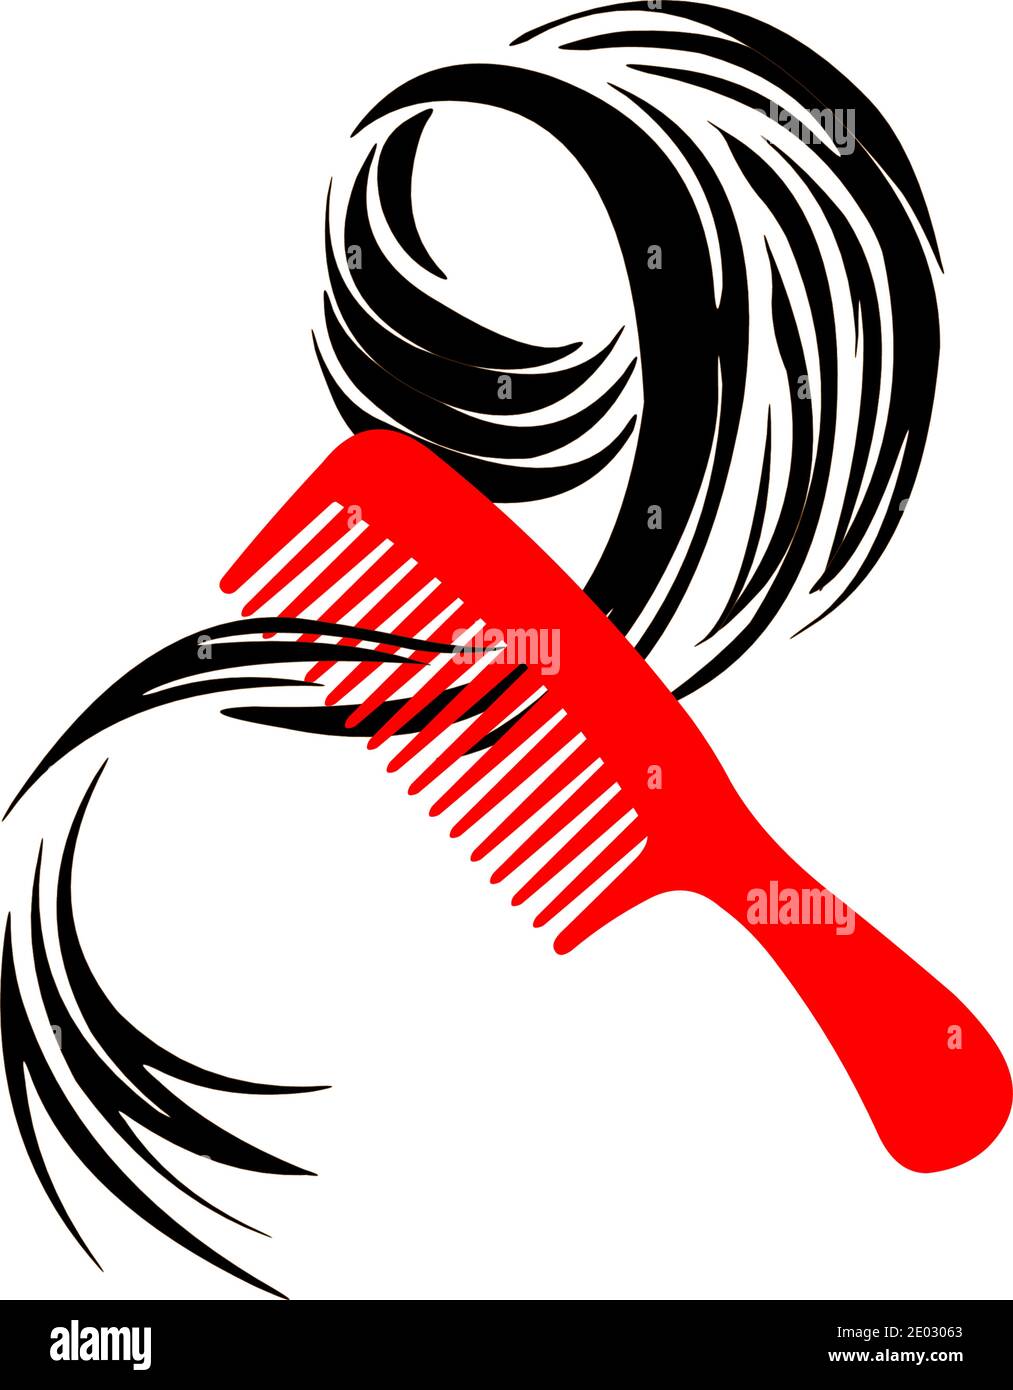 Kamm mit Haarsträhne für Friseursalon. Stock Vektor